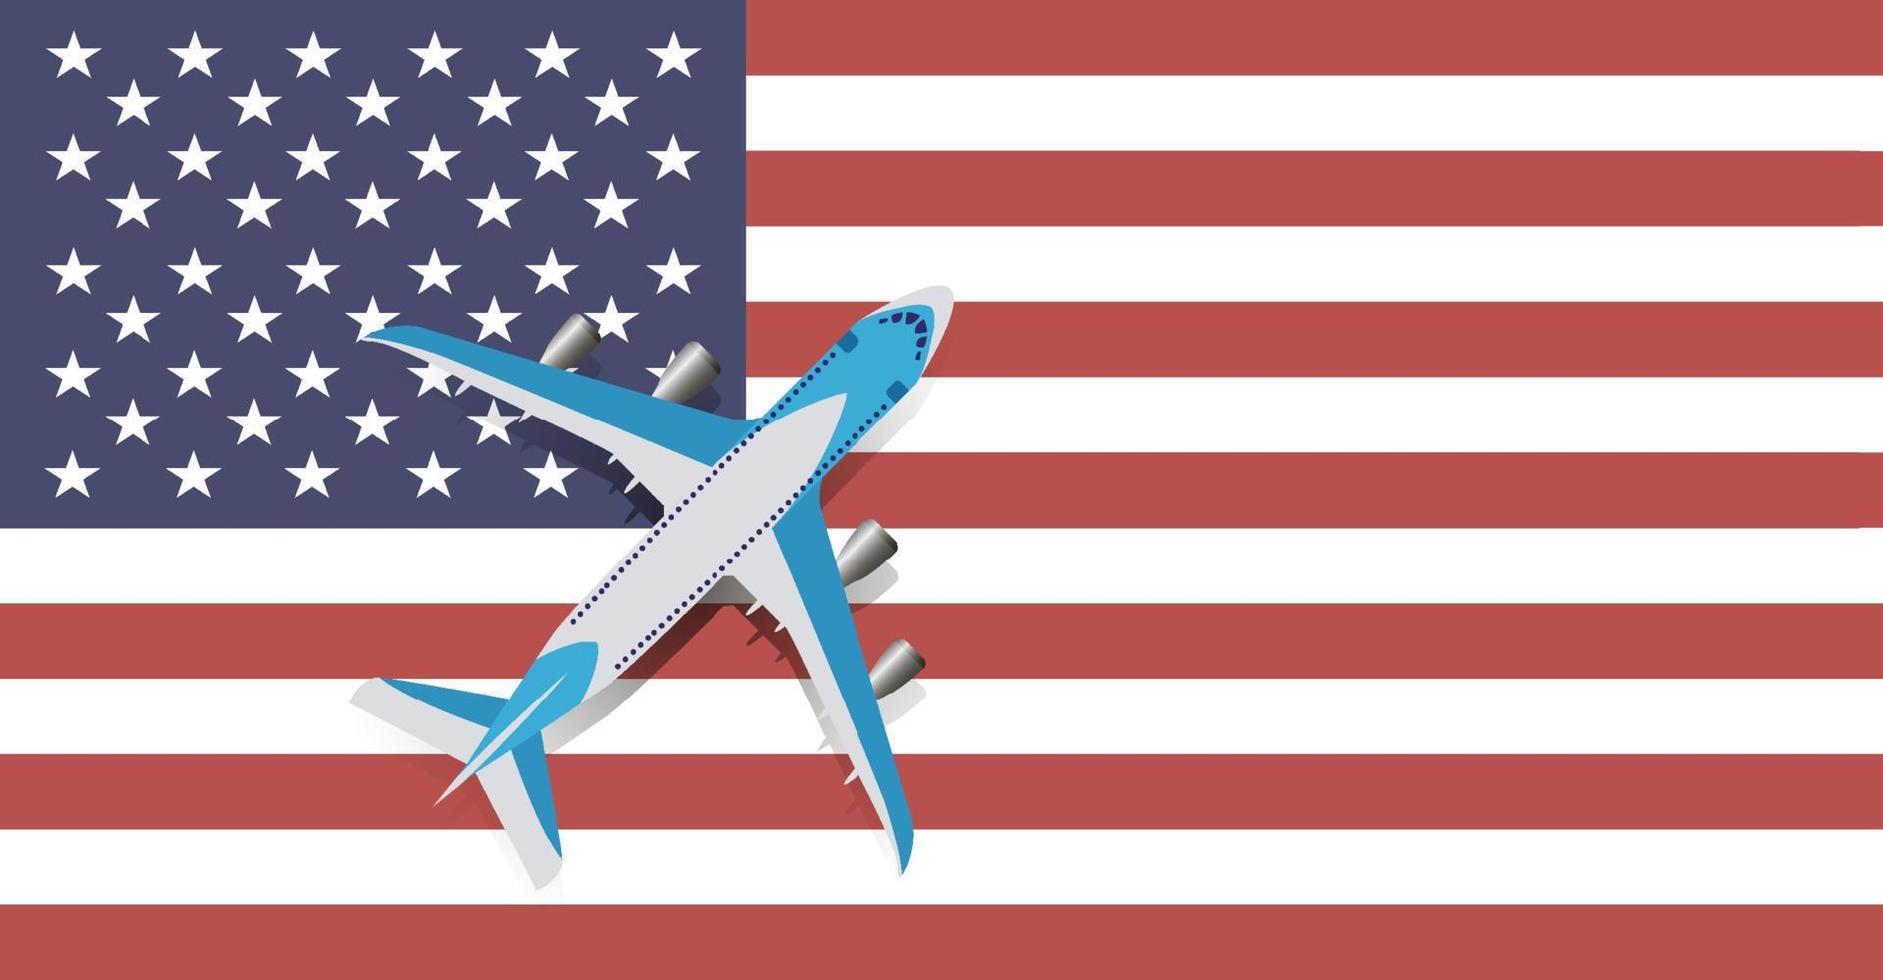 illustrazione vettoriale di un aereo passeggeri che sorvola la bandiera degli stati uniti d'america. concetto di turismo e viaggi